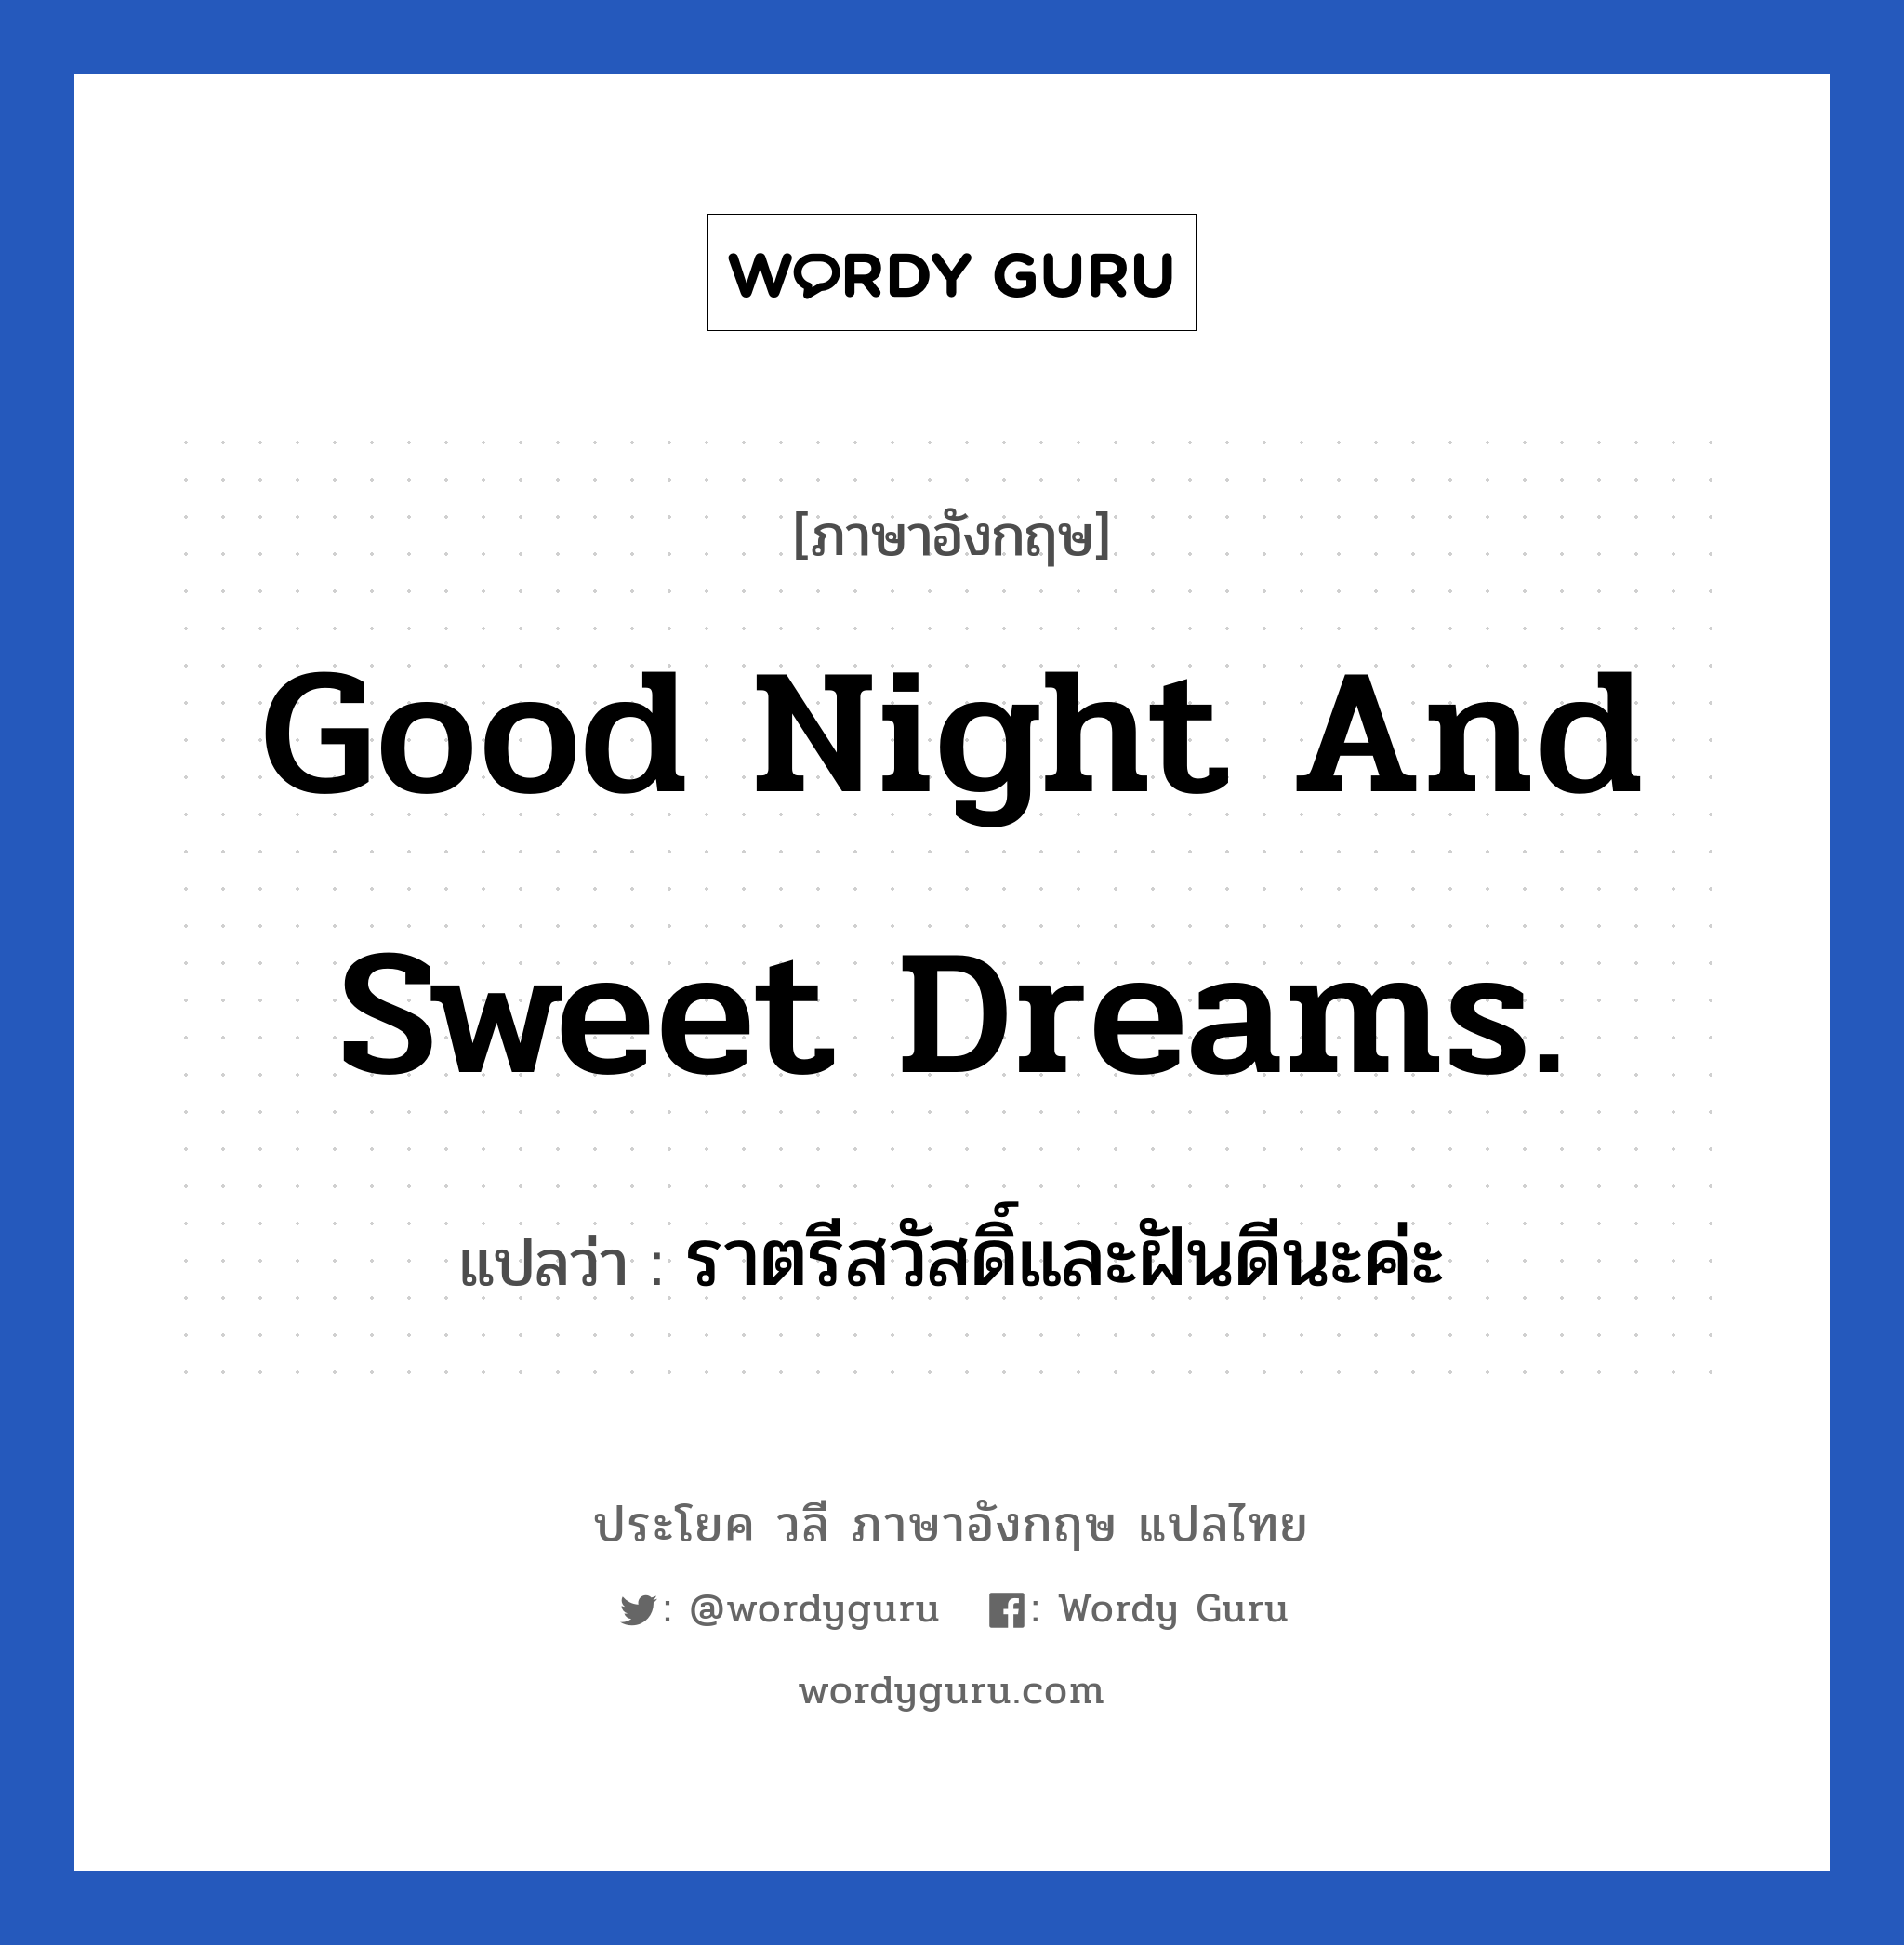 ราตรีสวัสดิ์และฝันดีนะค่ะ ภาษาอังกฤษ?, วลีภาษาอังกฤษ ราตรีสวัสดิ์และฝันดีนะค่ะ แปลว่า Good night and sweet dreams. หมวด ความรัก